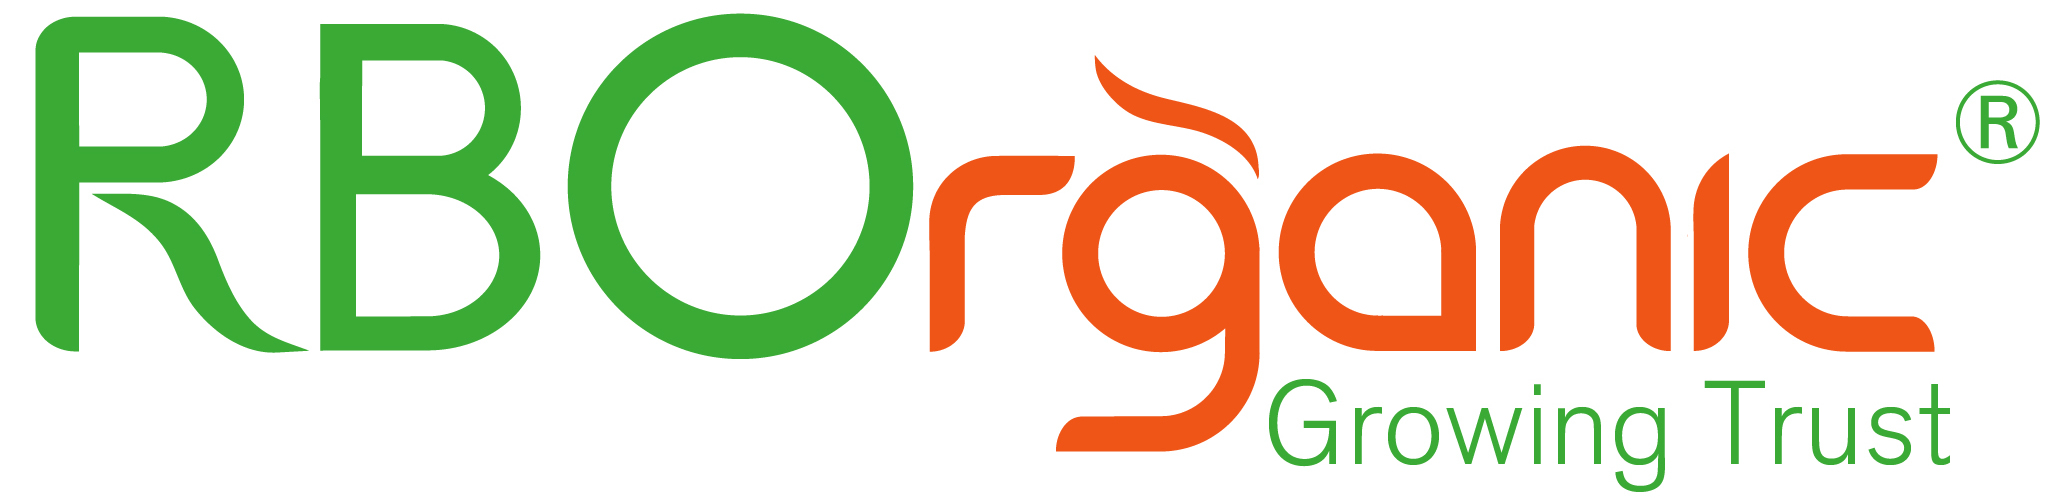 RBOrganic Ltd logo